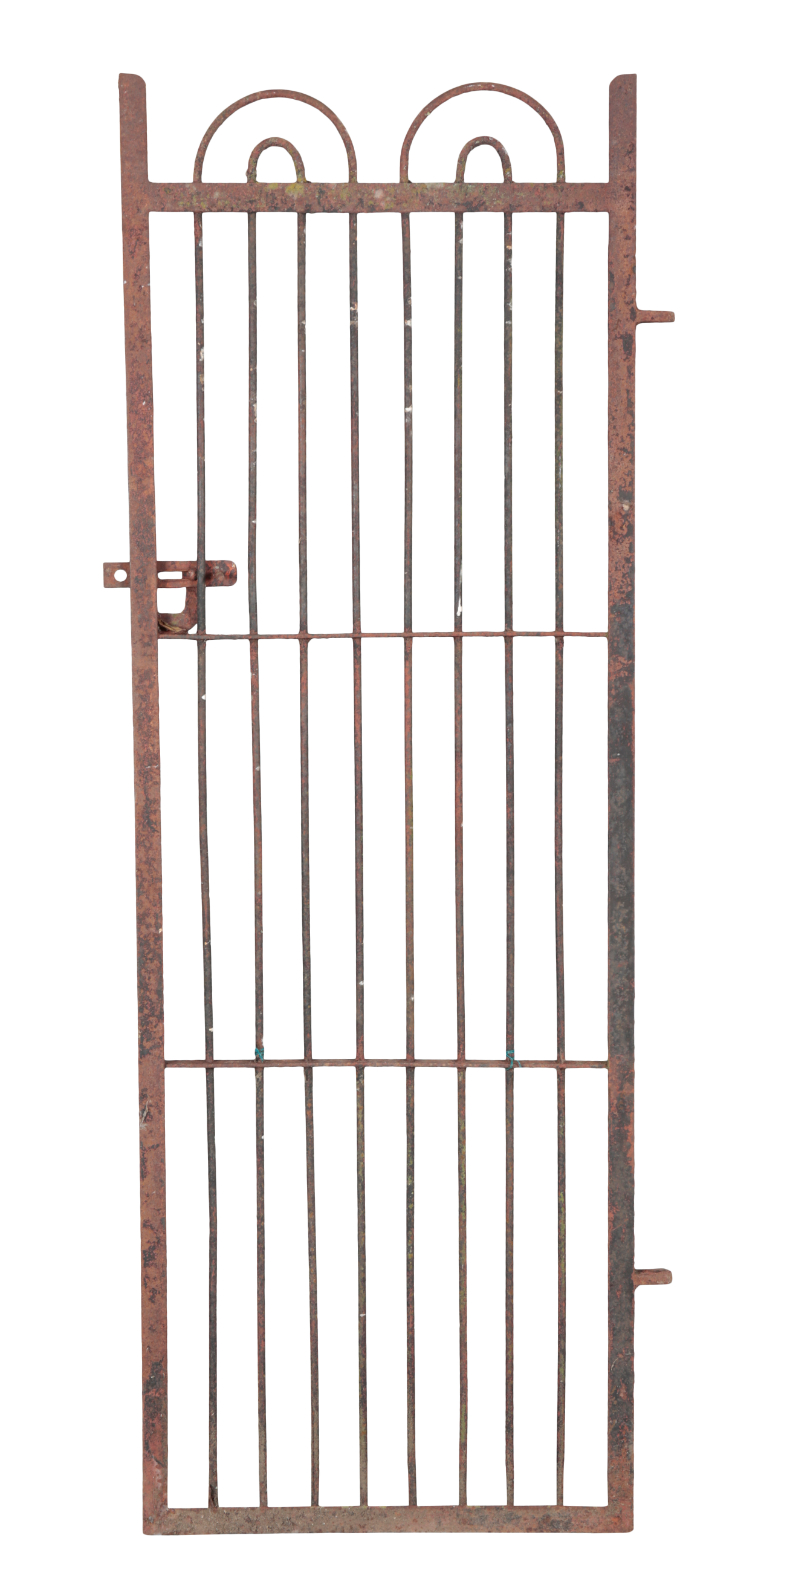 A WROUGHT IRON GARDEN GATE 179cm